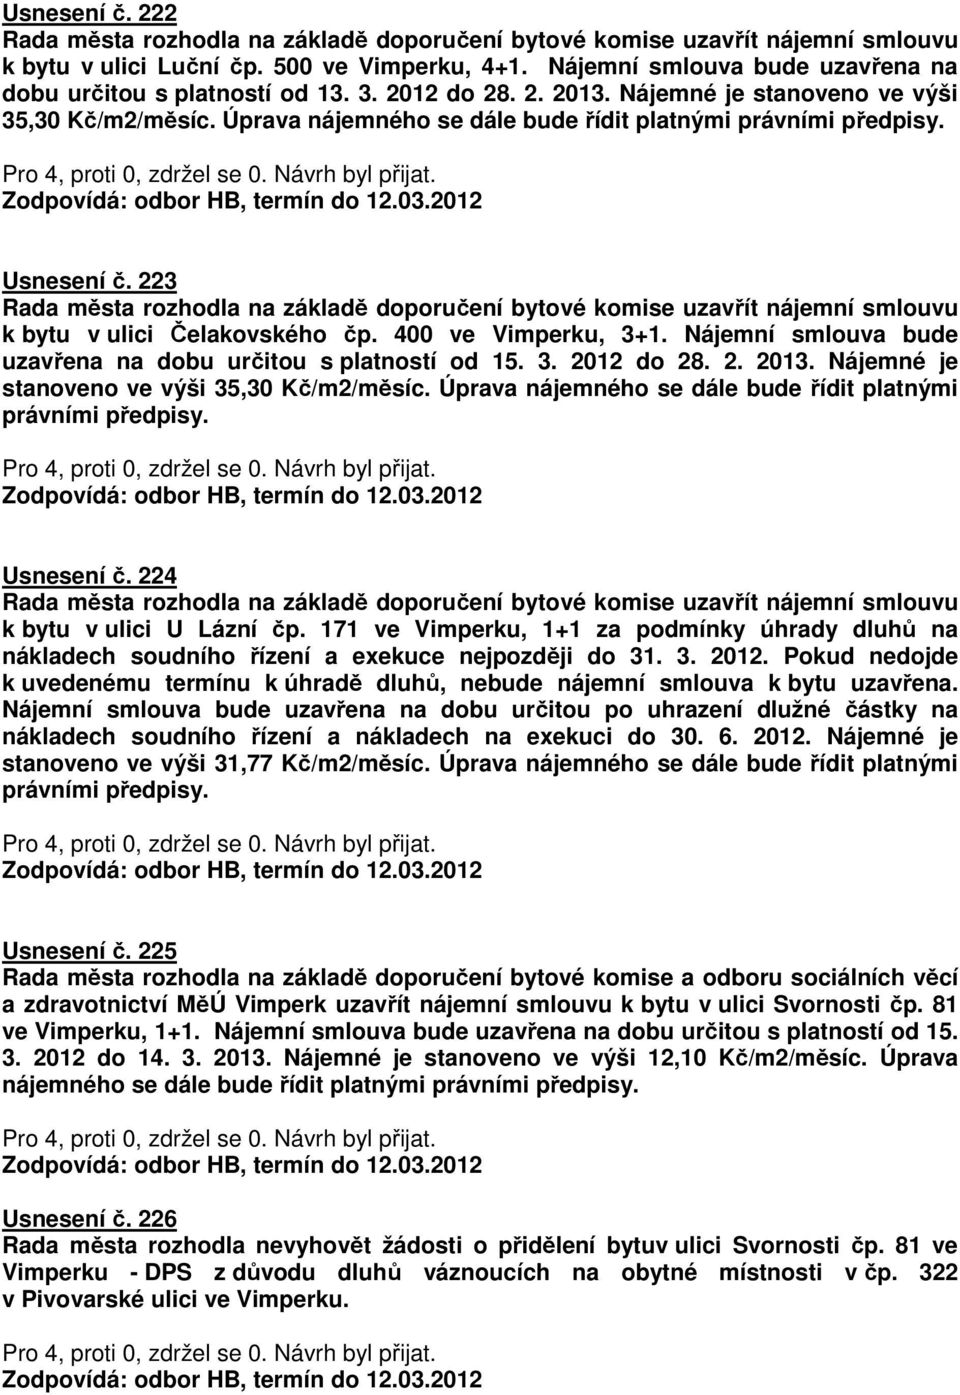 Usnesení č. 223 Rada města rozhodla na základě doporučení bytové komise uzavřít nájemní smlouvu k bytu v ulici Čelakovského čp. 400 ve Vimperku, 3+1.